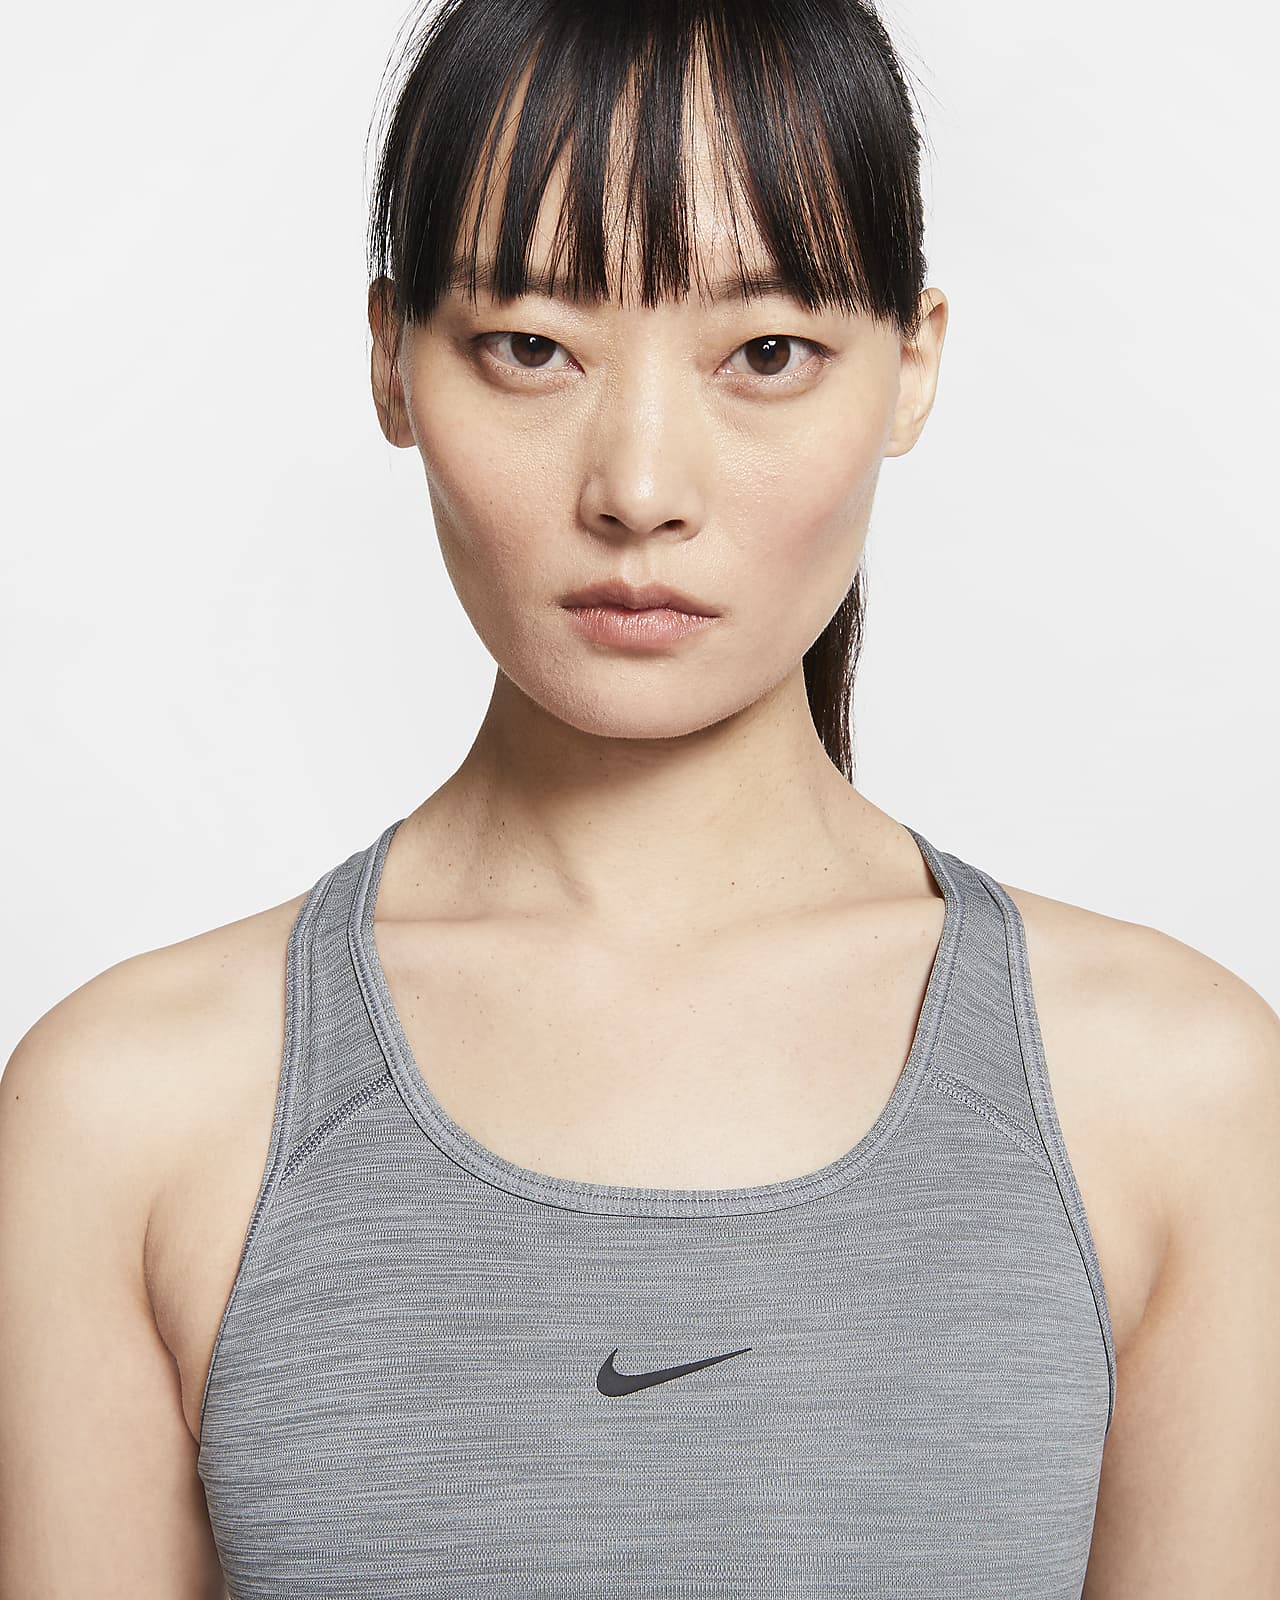 Nike Women's Dri-FIT Swoosh Medium-Support 1-Piece Pad Sports Bra